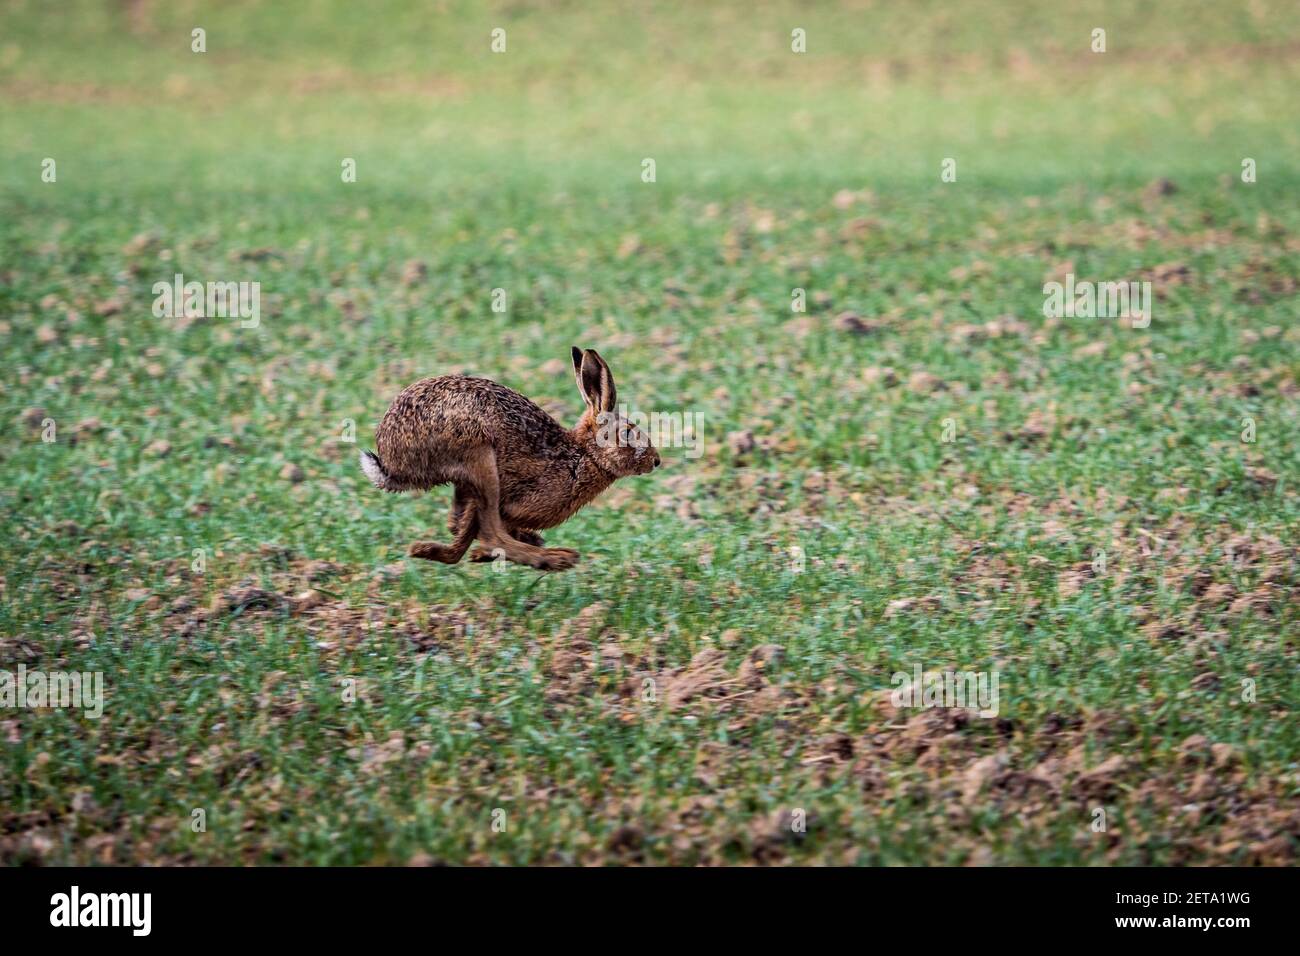 Running Hare - Europäische Hare läuft über ein Feld in Cambridgeshire Südengland. Brauner Hagebrannten. Lepus europaeus. Stockfoto